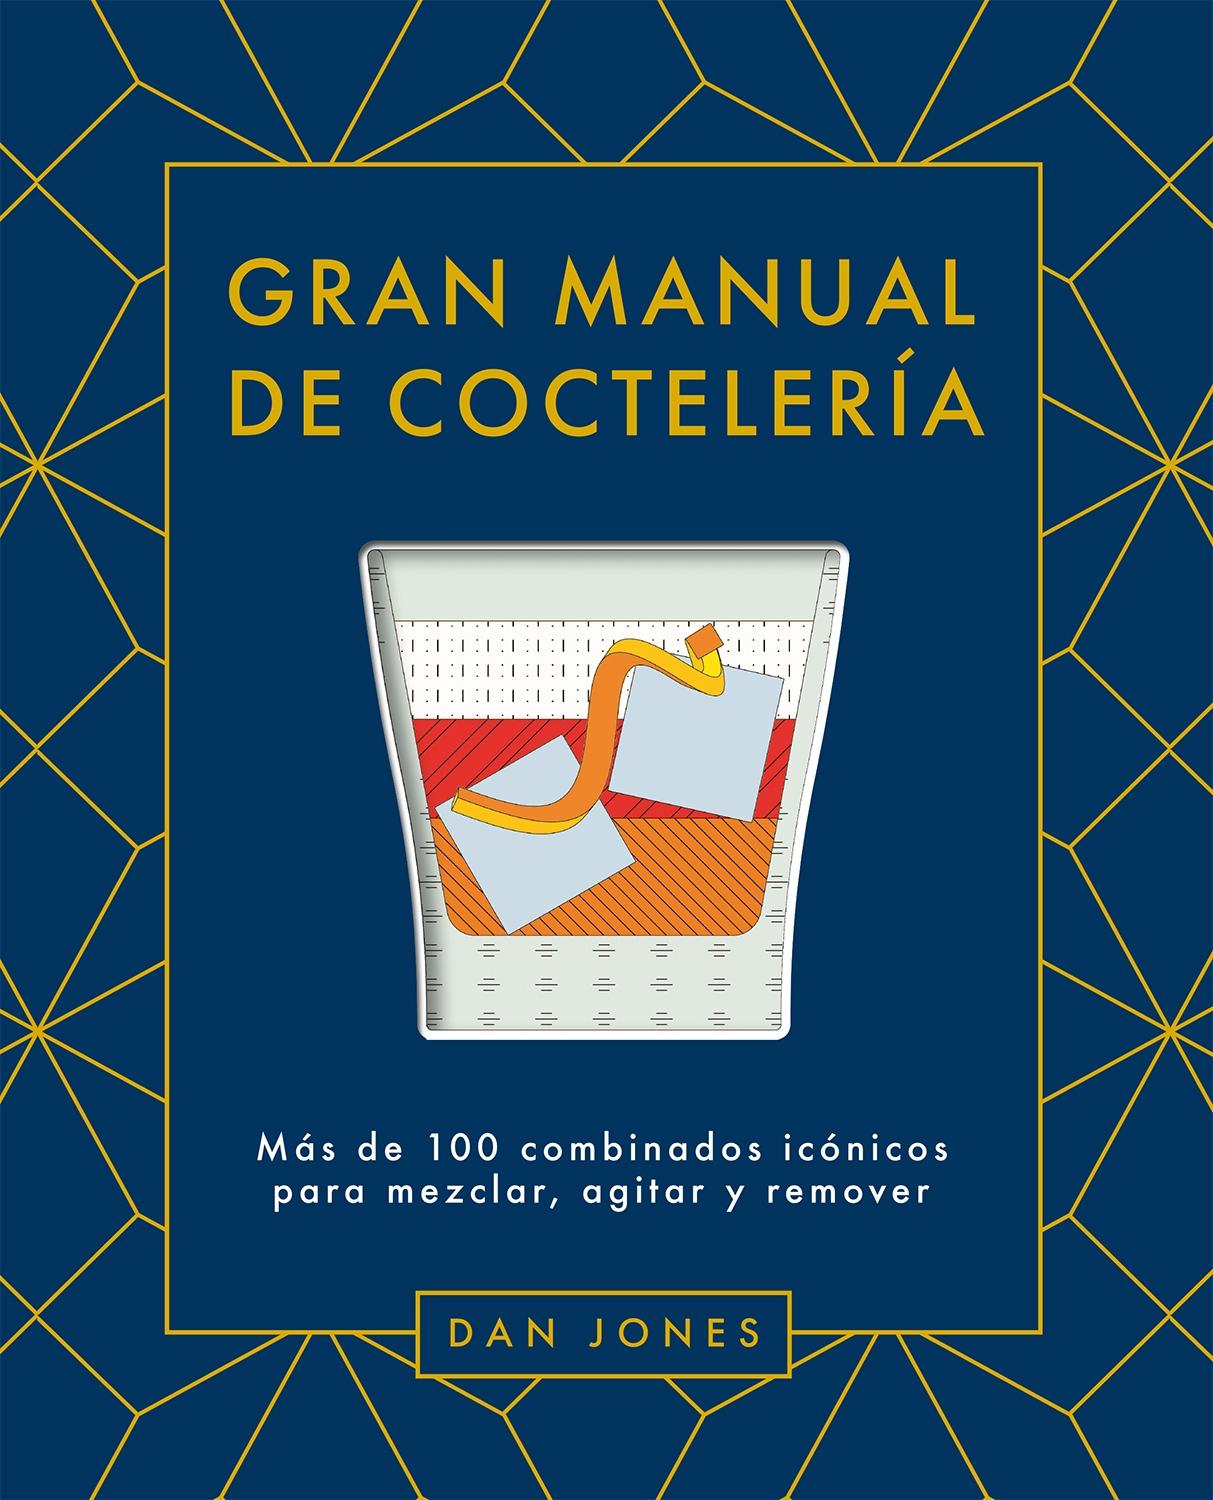 Gran Manual de Coctelería "Más de 100 Combinados Icónicos para Mezclar, Agitar y Remover". 